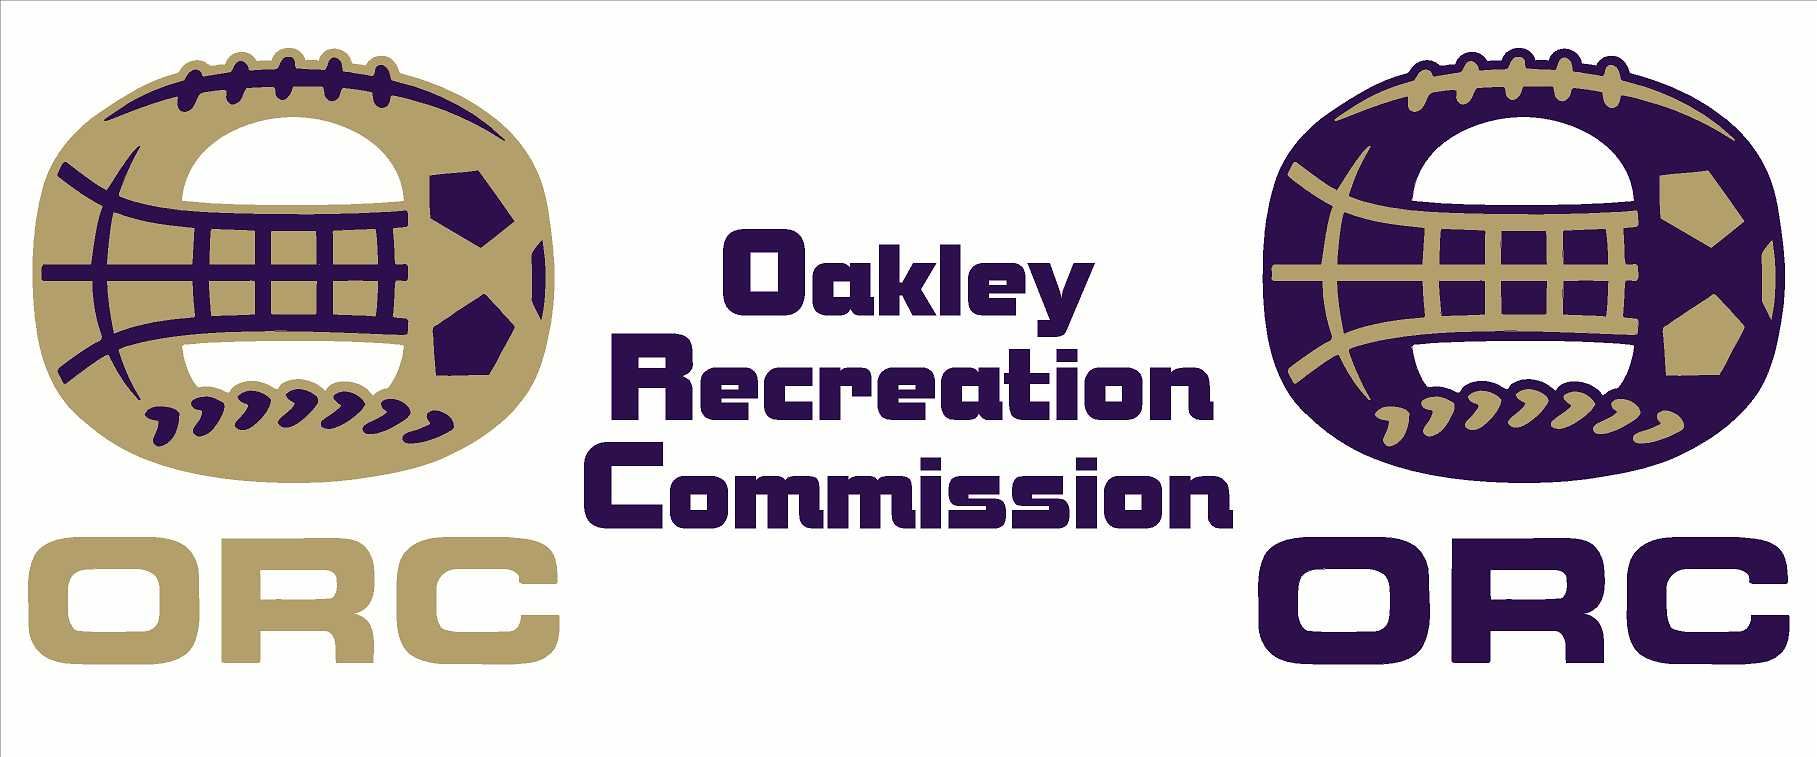 Oakley Recreation